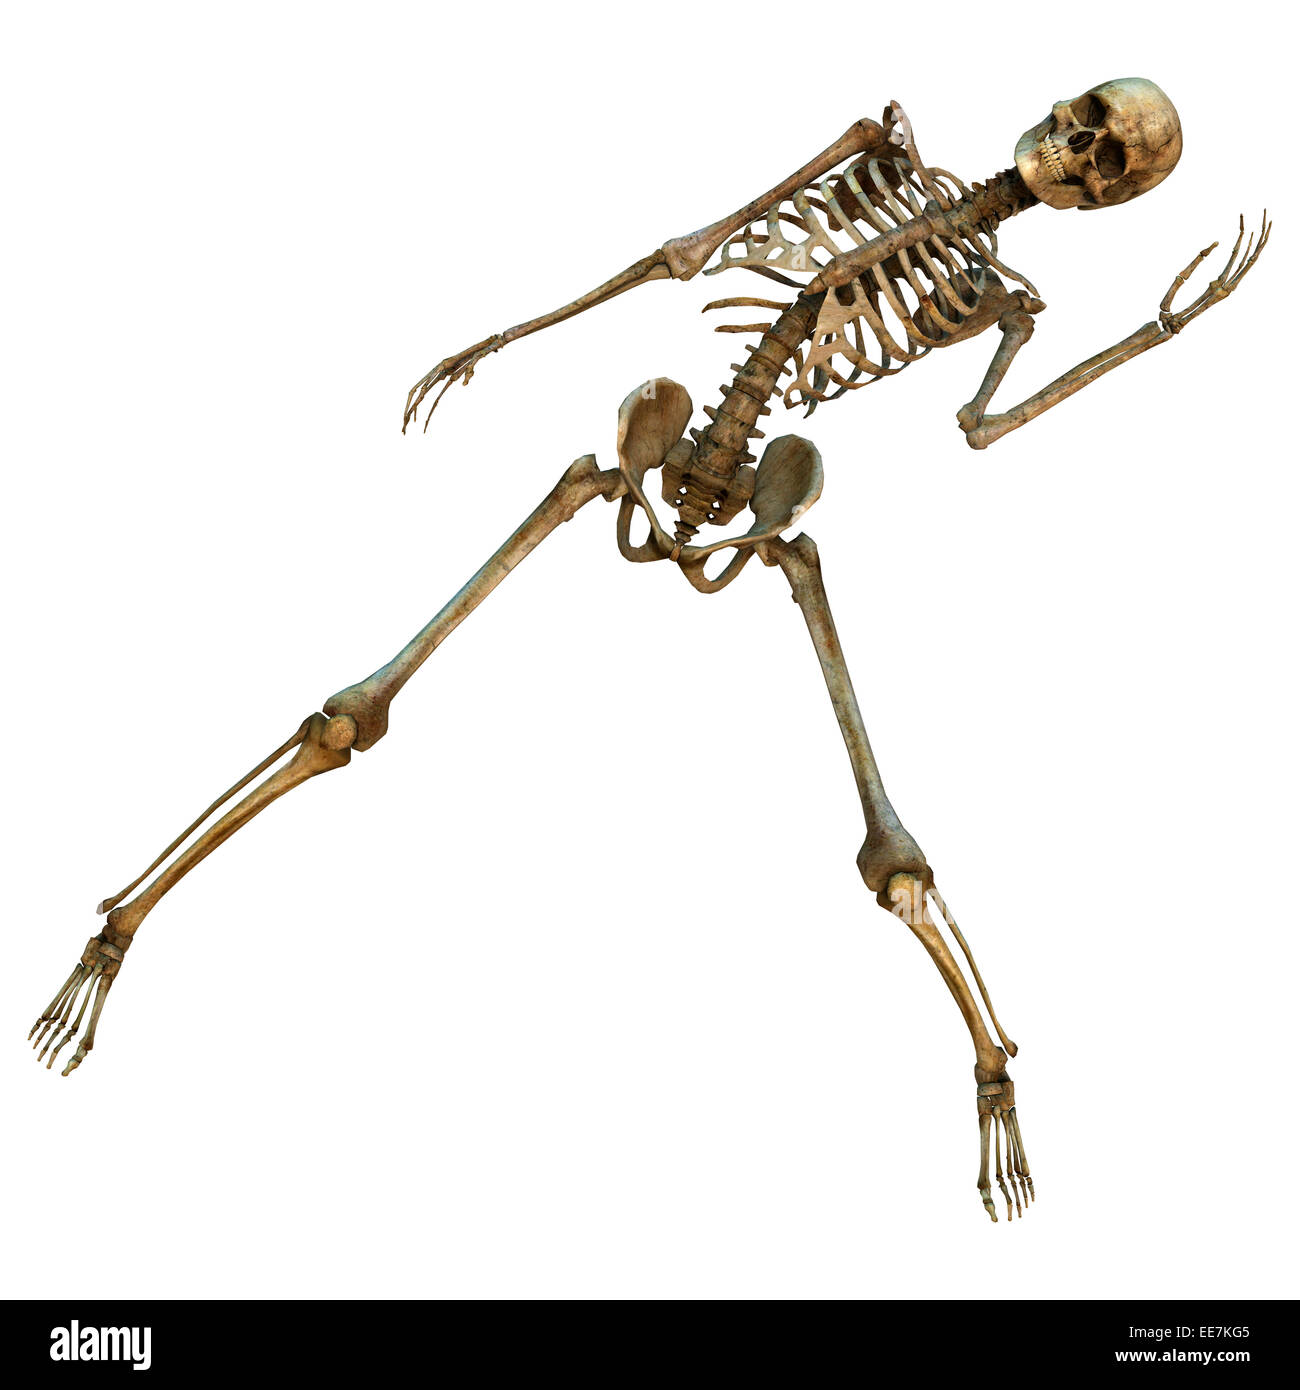 Squelette dansant Banque d'images détourées - Alamy